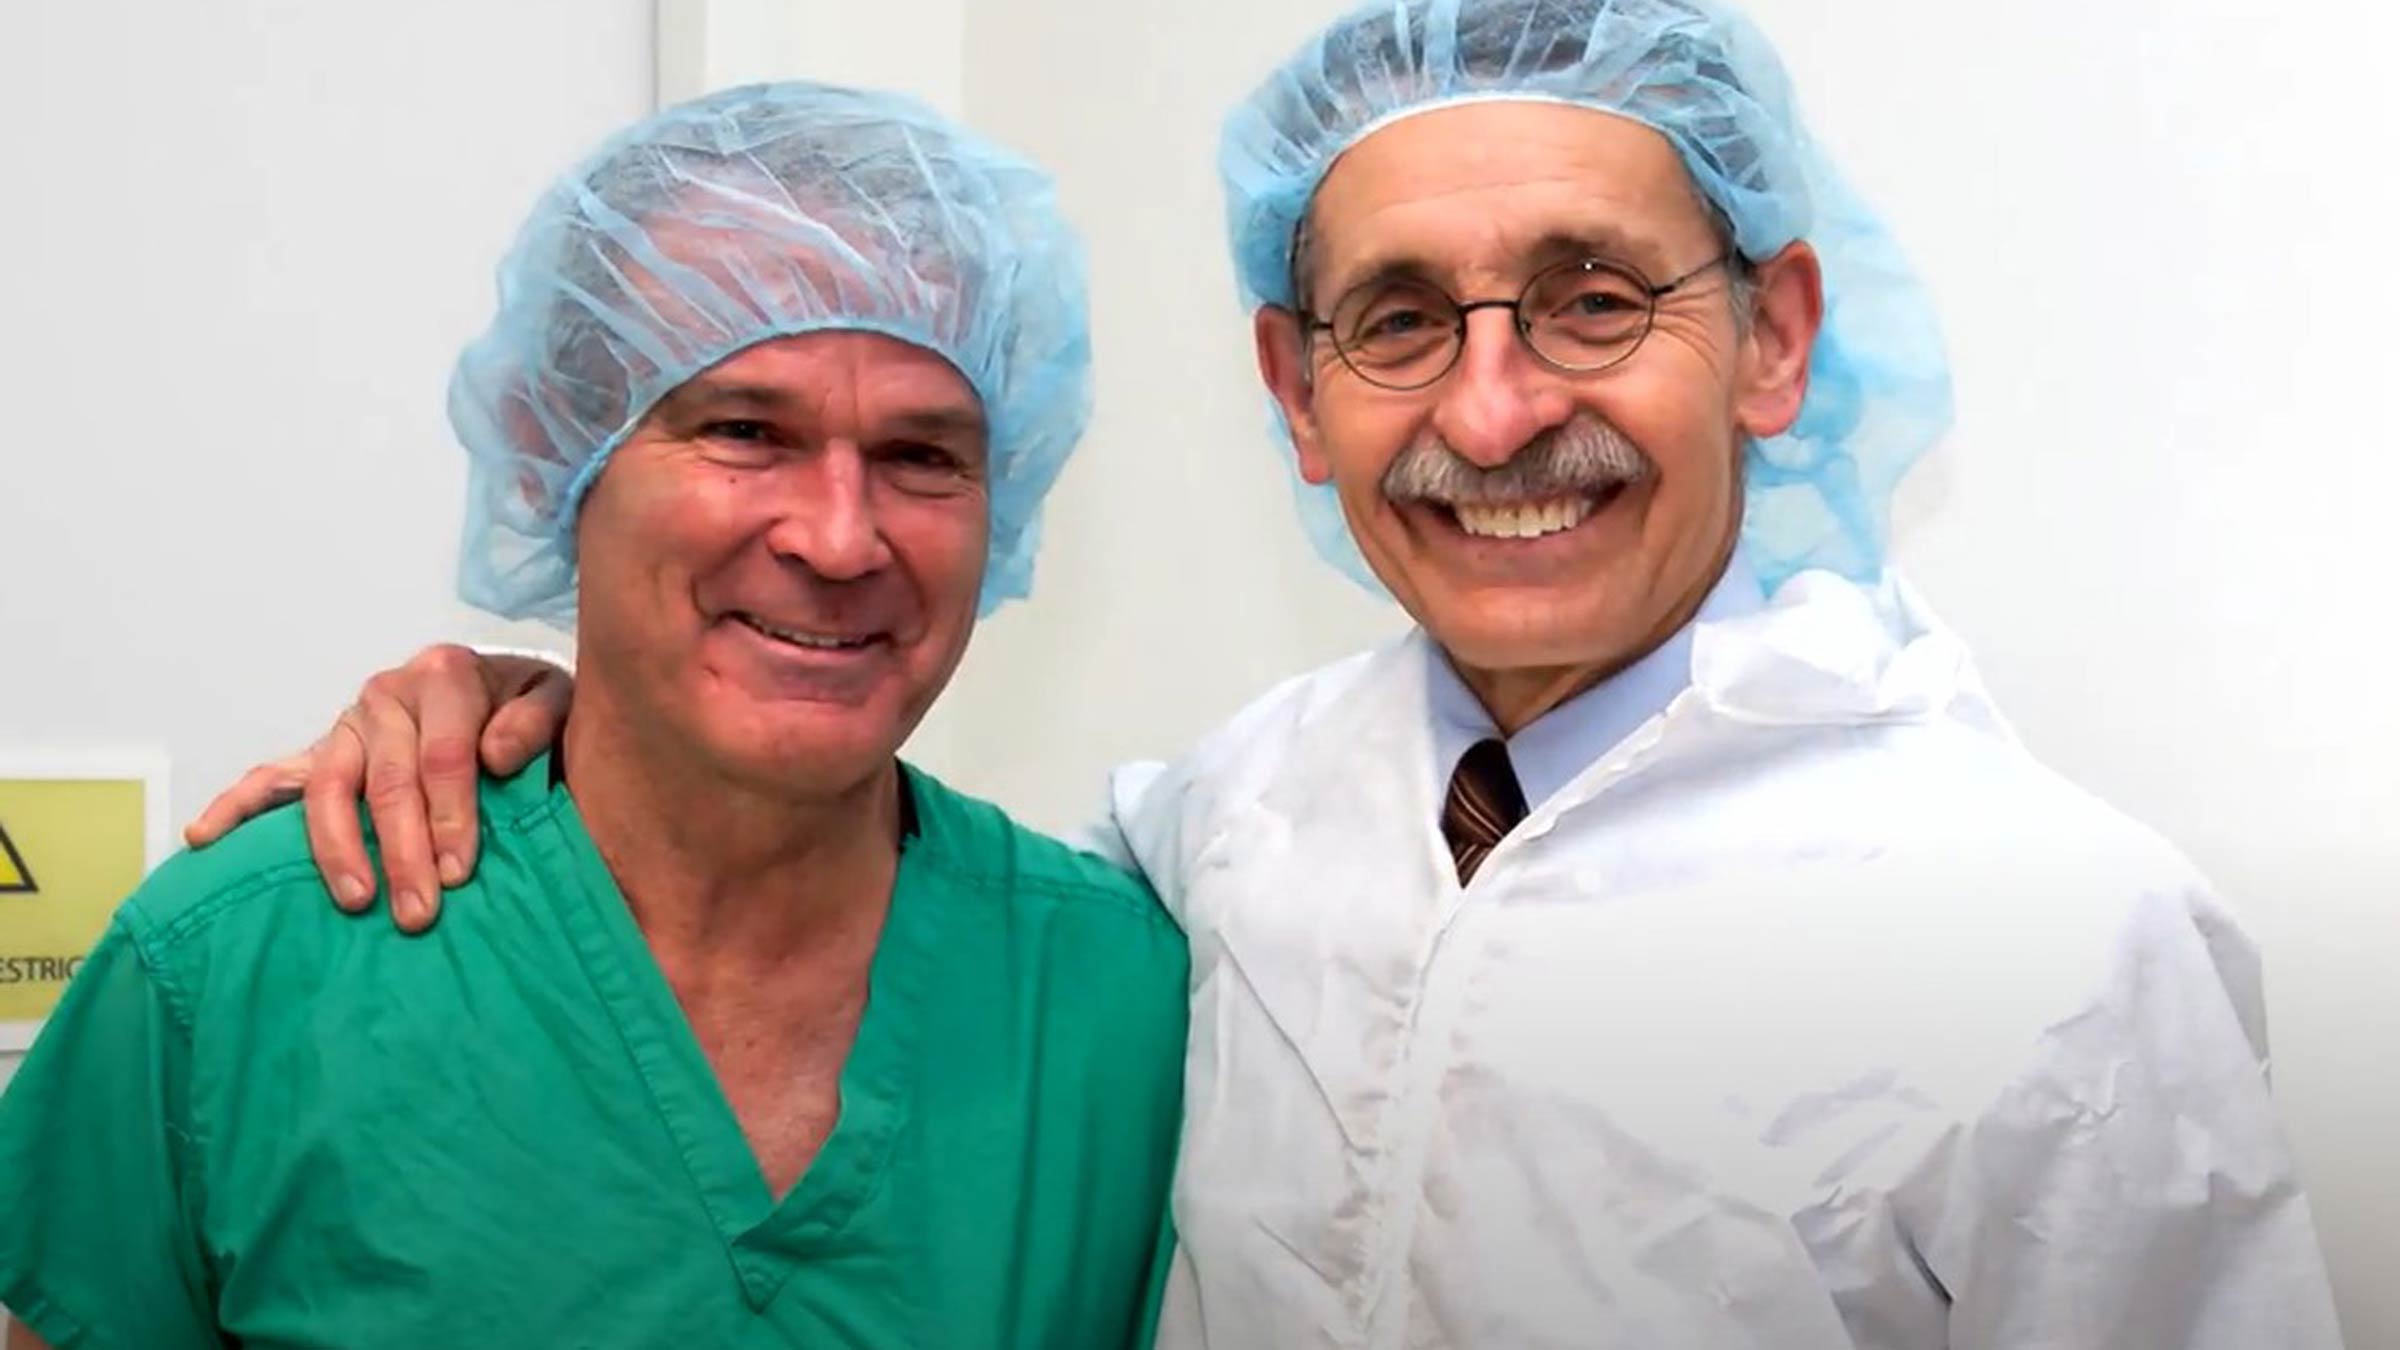 Dr. Farrar and Dr. Schueller together in scrubs